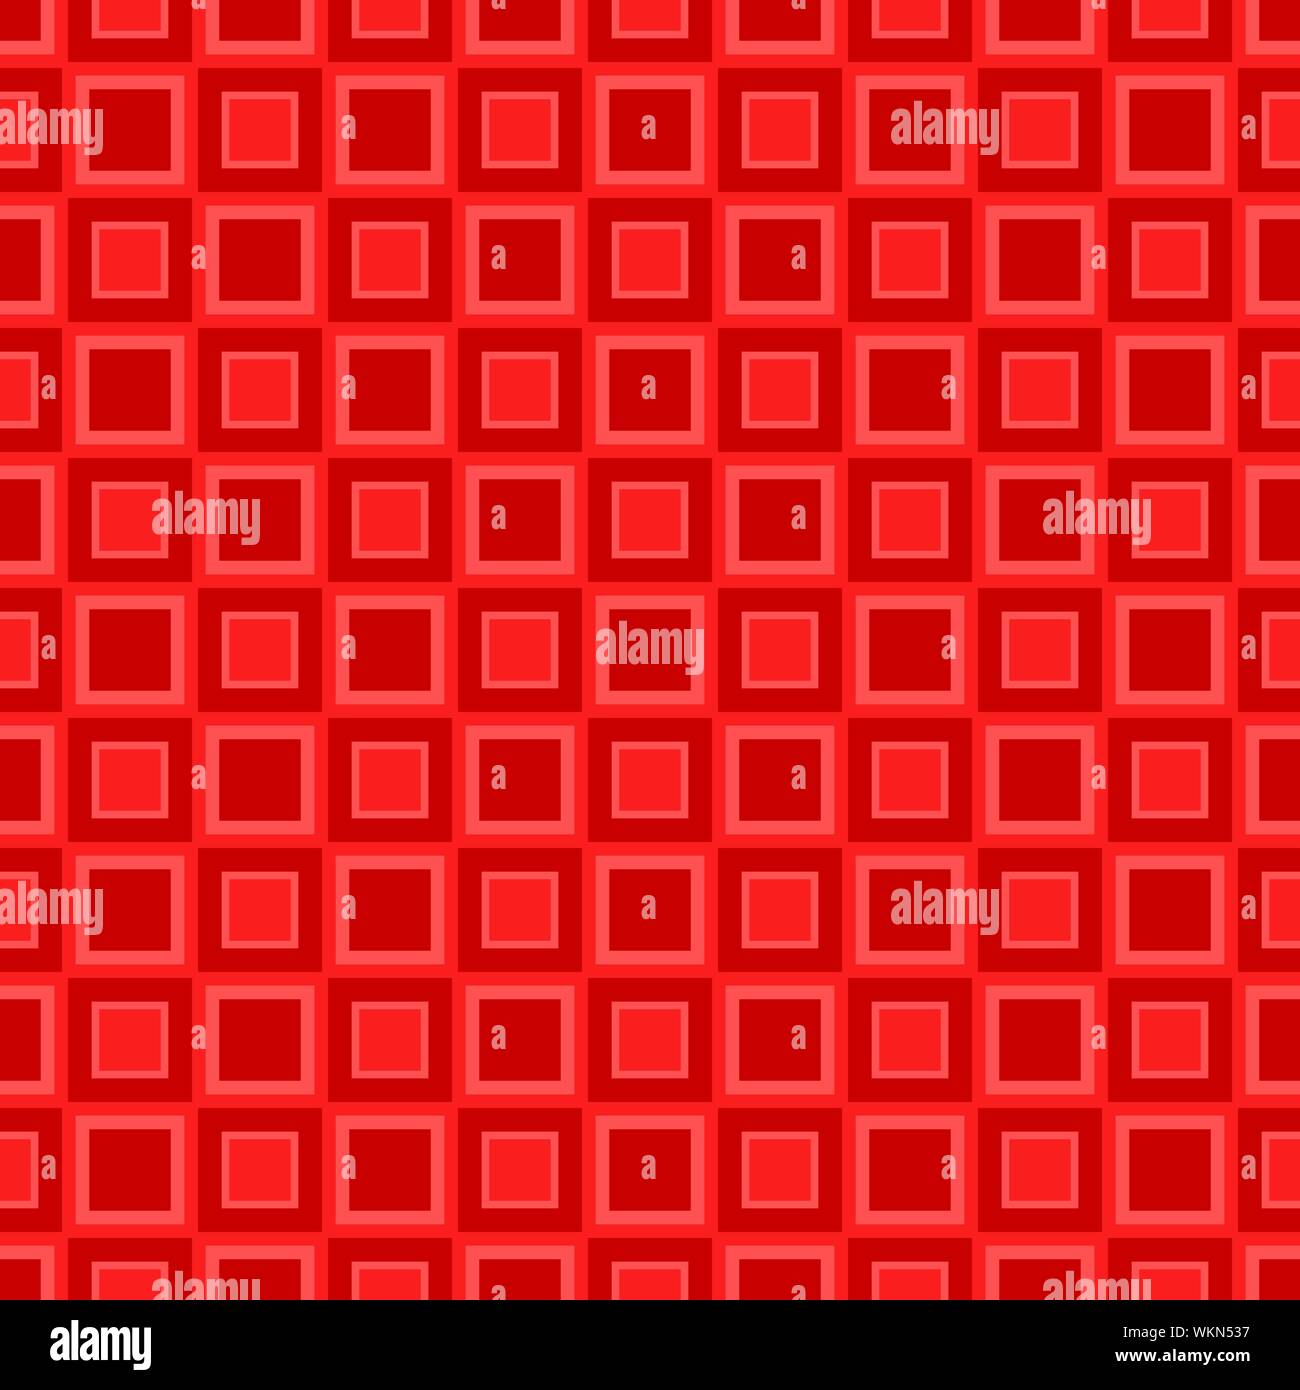 Zusammenfassung nahtlose quadratischen Muster Hintergrund Design - Farbe vektorgrafik Stock Vektor